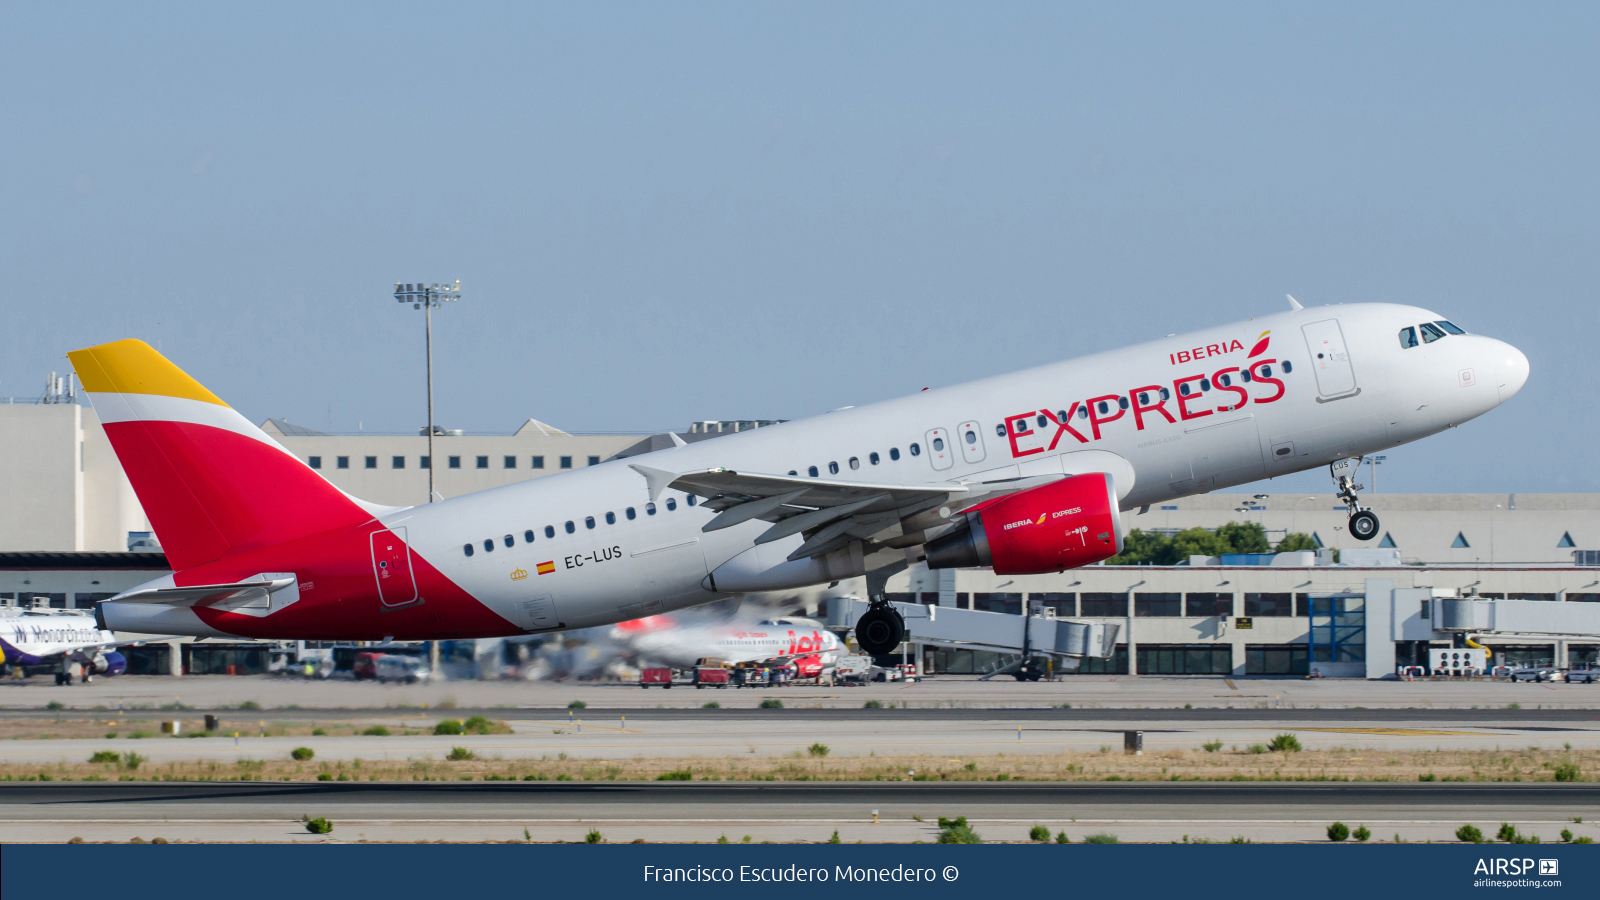 Iberia Express  Airbus A320  EC-LUS